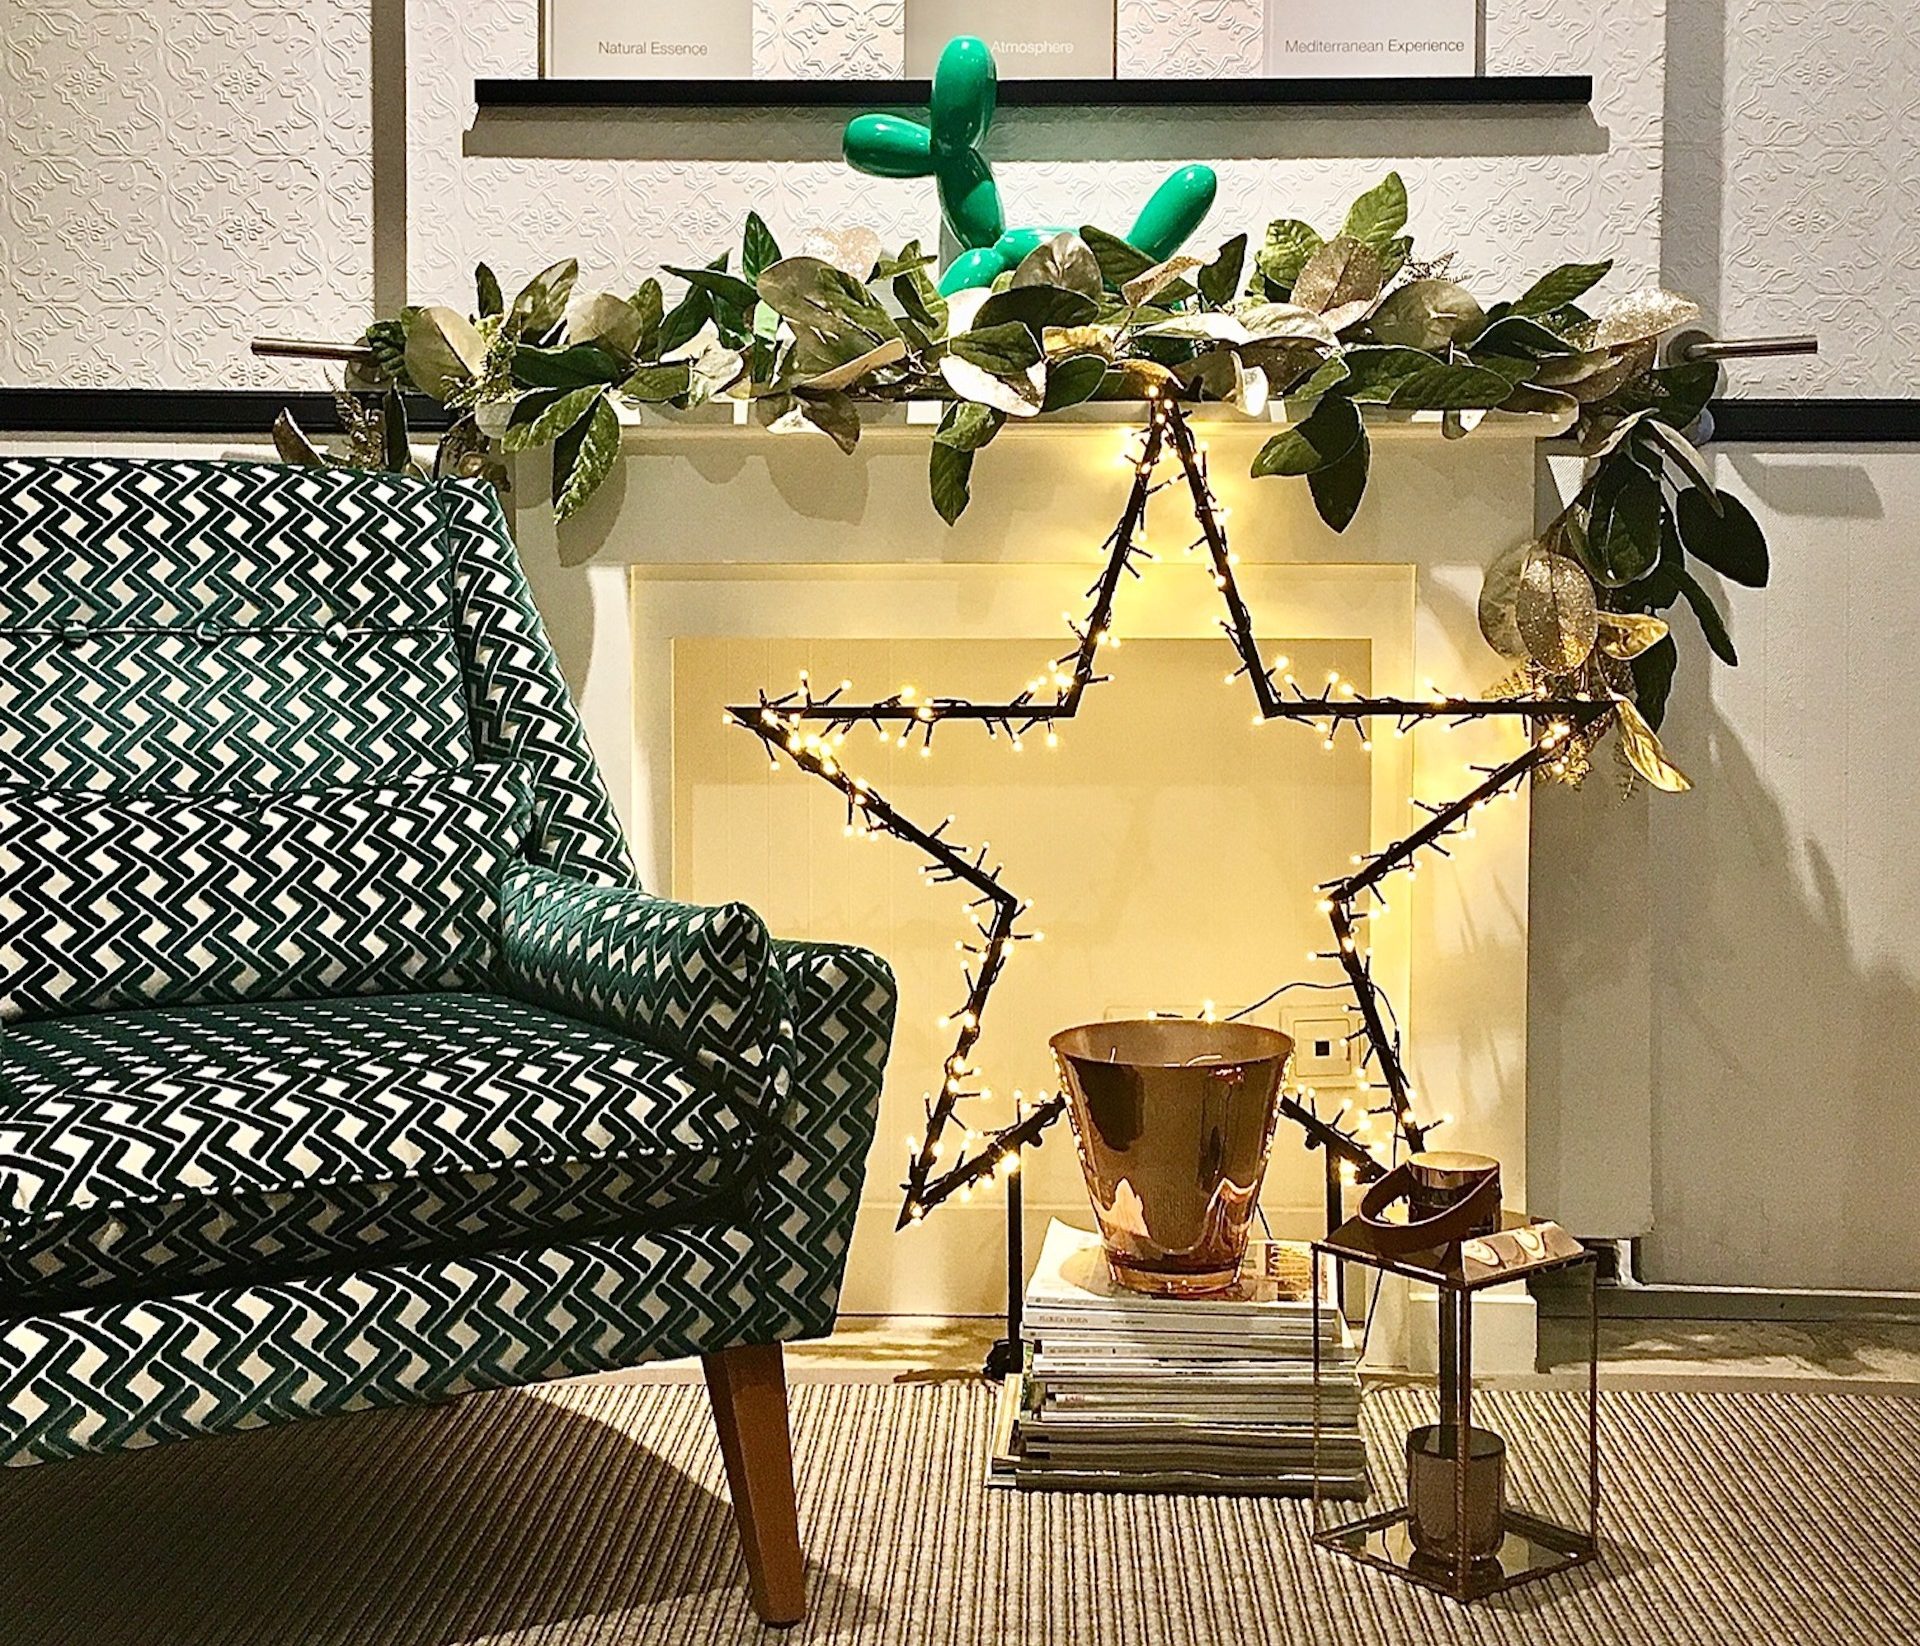 Las claves inspiracionales de la decoración navideña 2020, por Eva Mesa